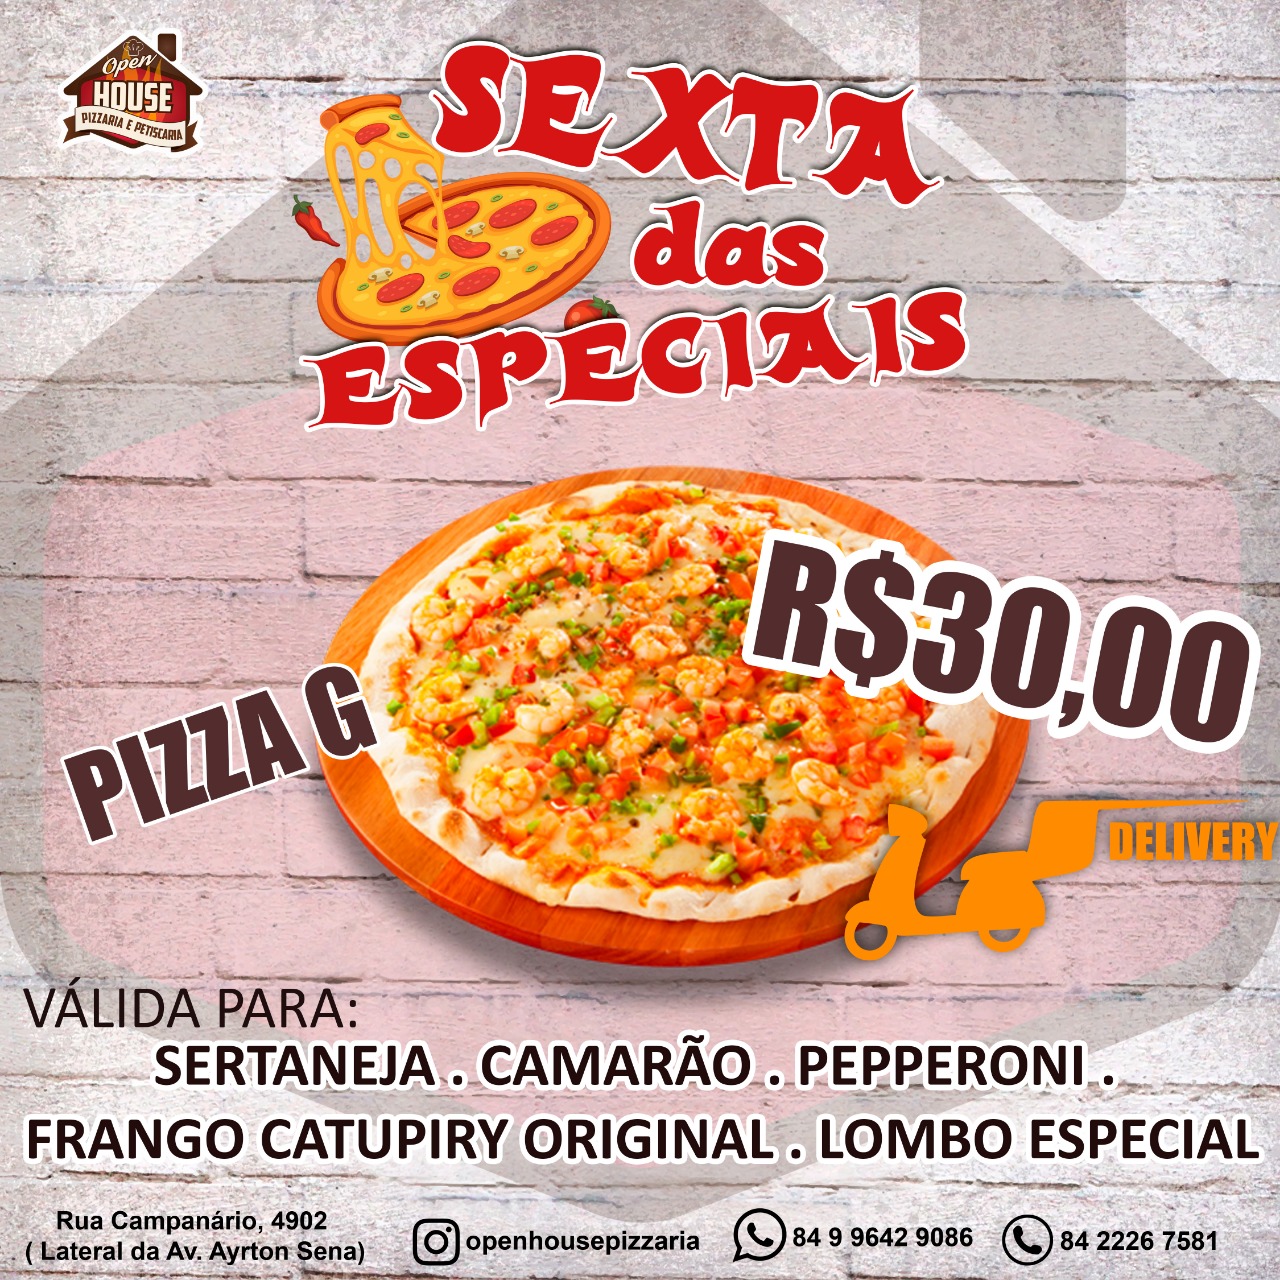 Promoção: Sexta das Especiais - Pizza Grande por 30,00